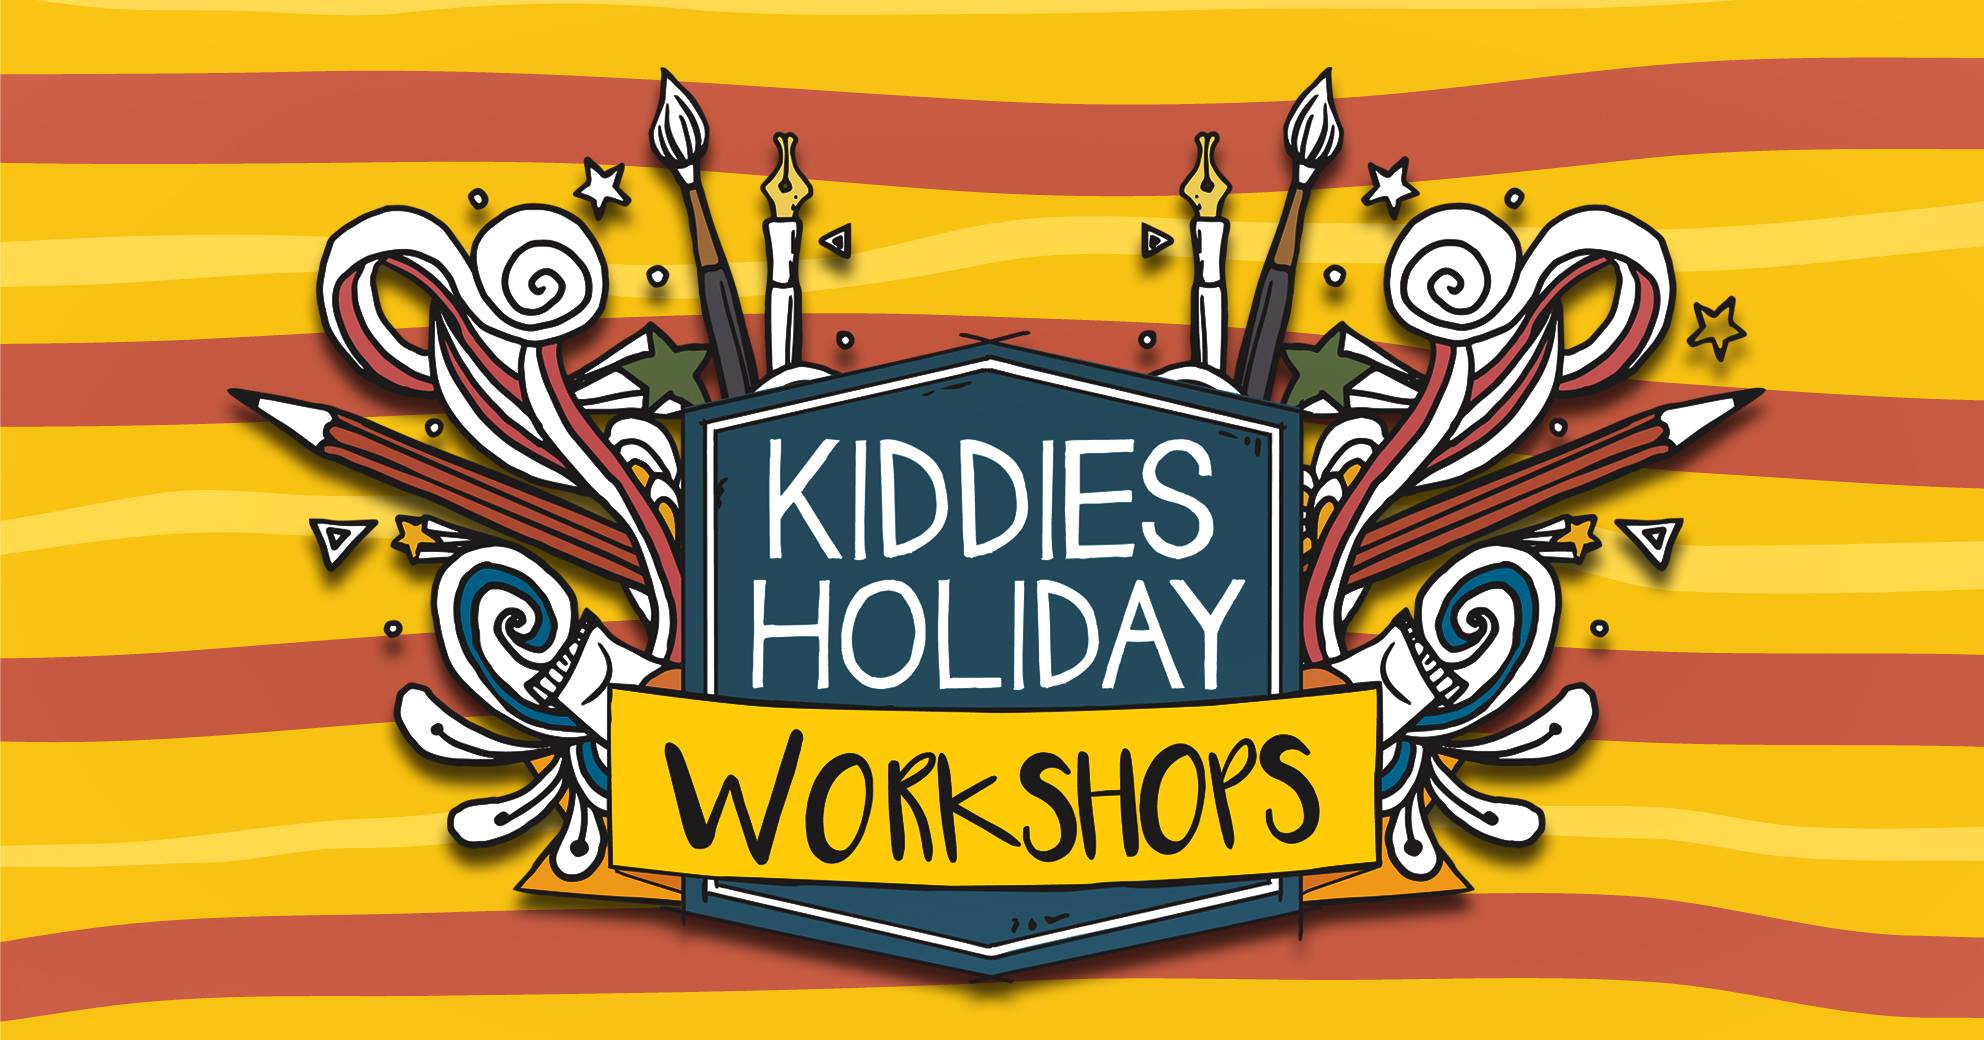 Kiddies Holiday Workshops at Oliewenhuis